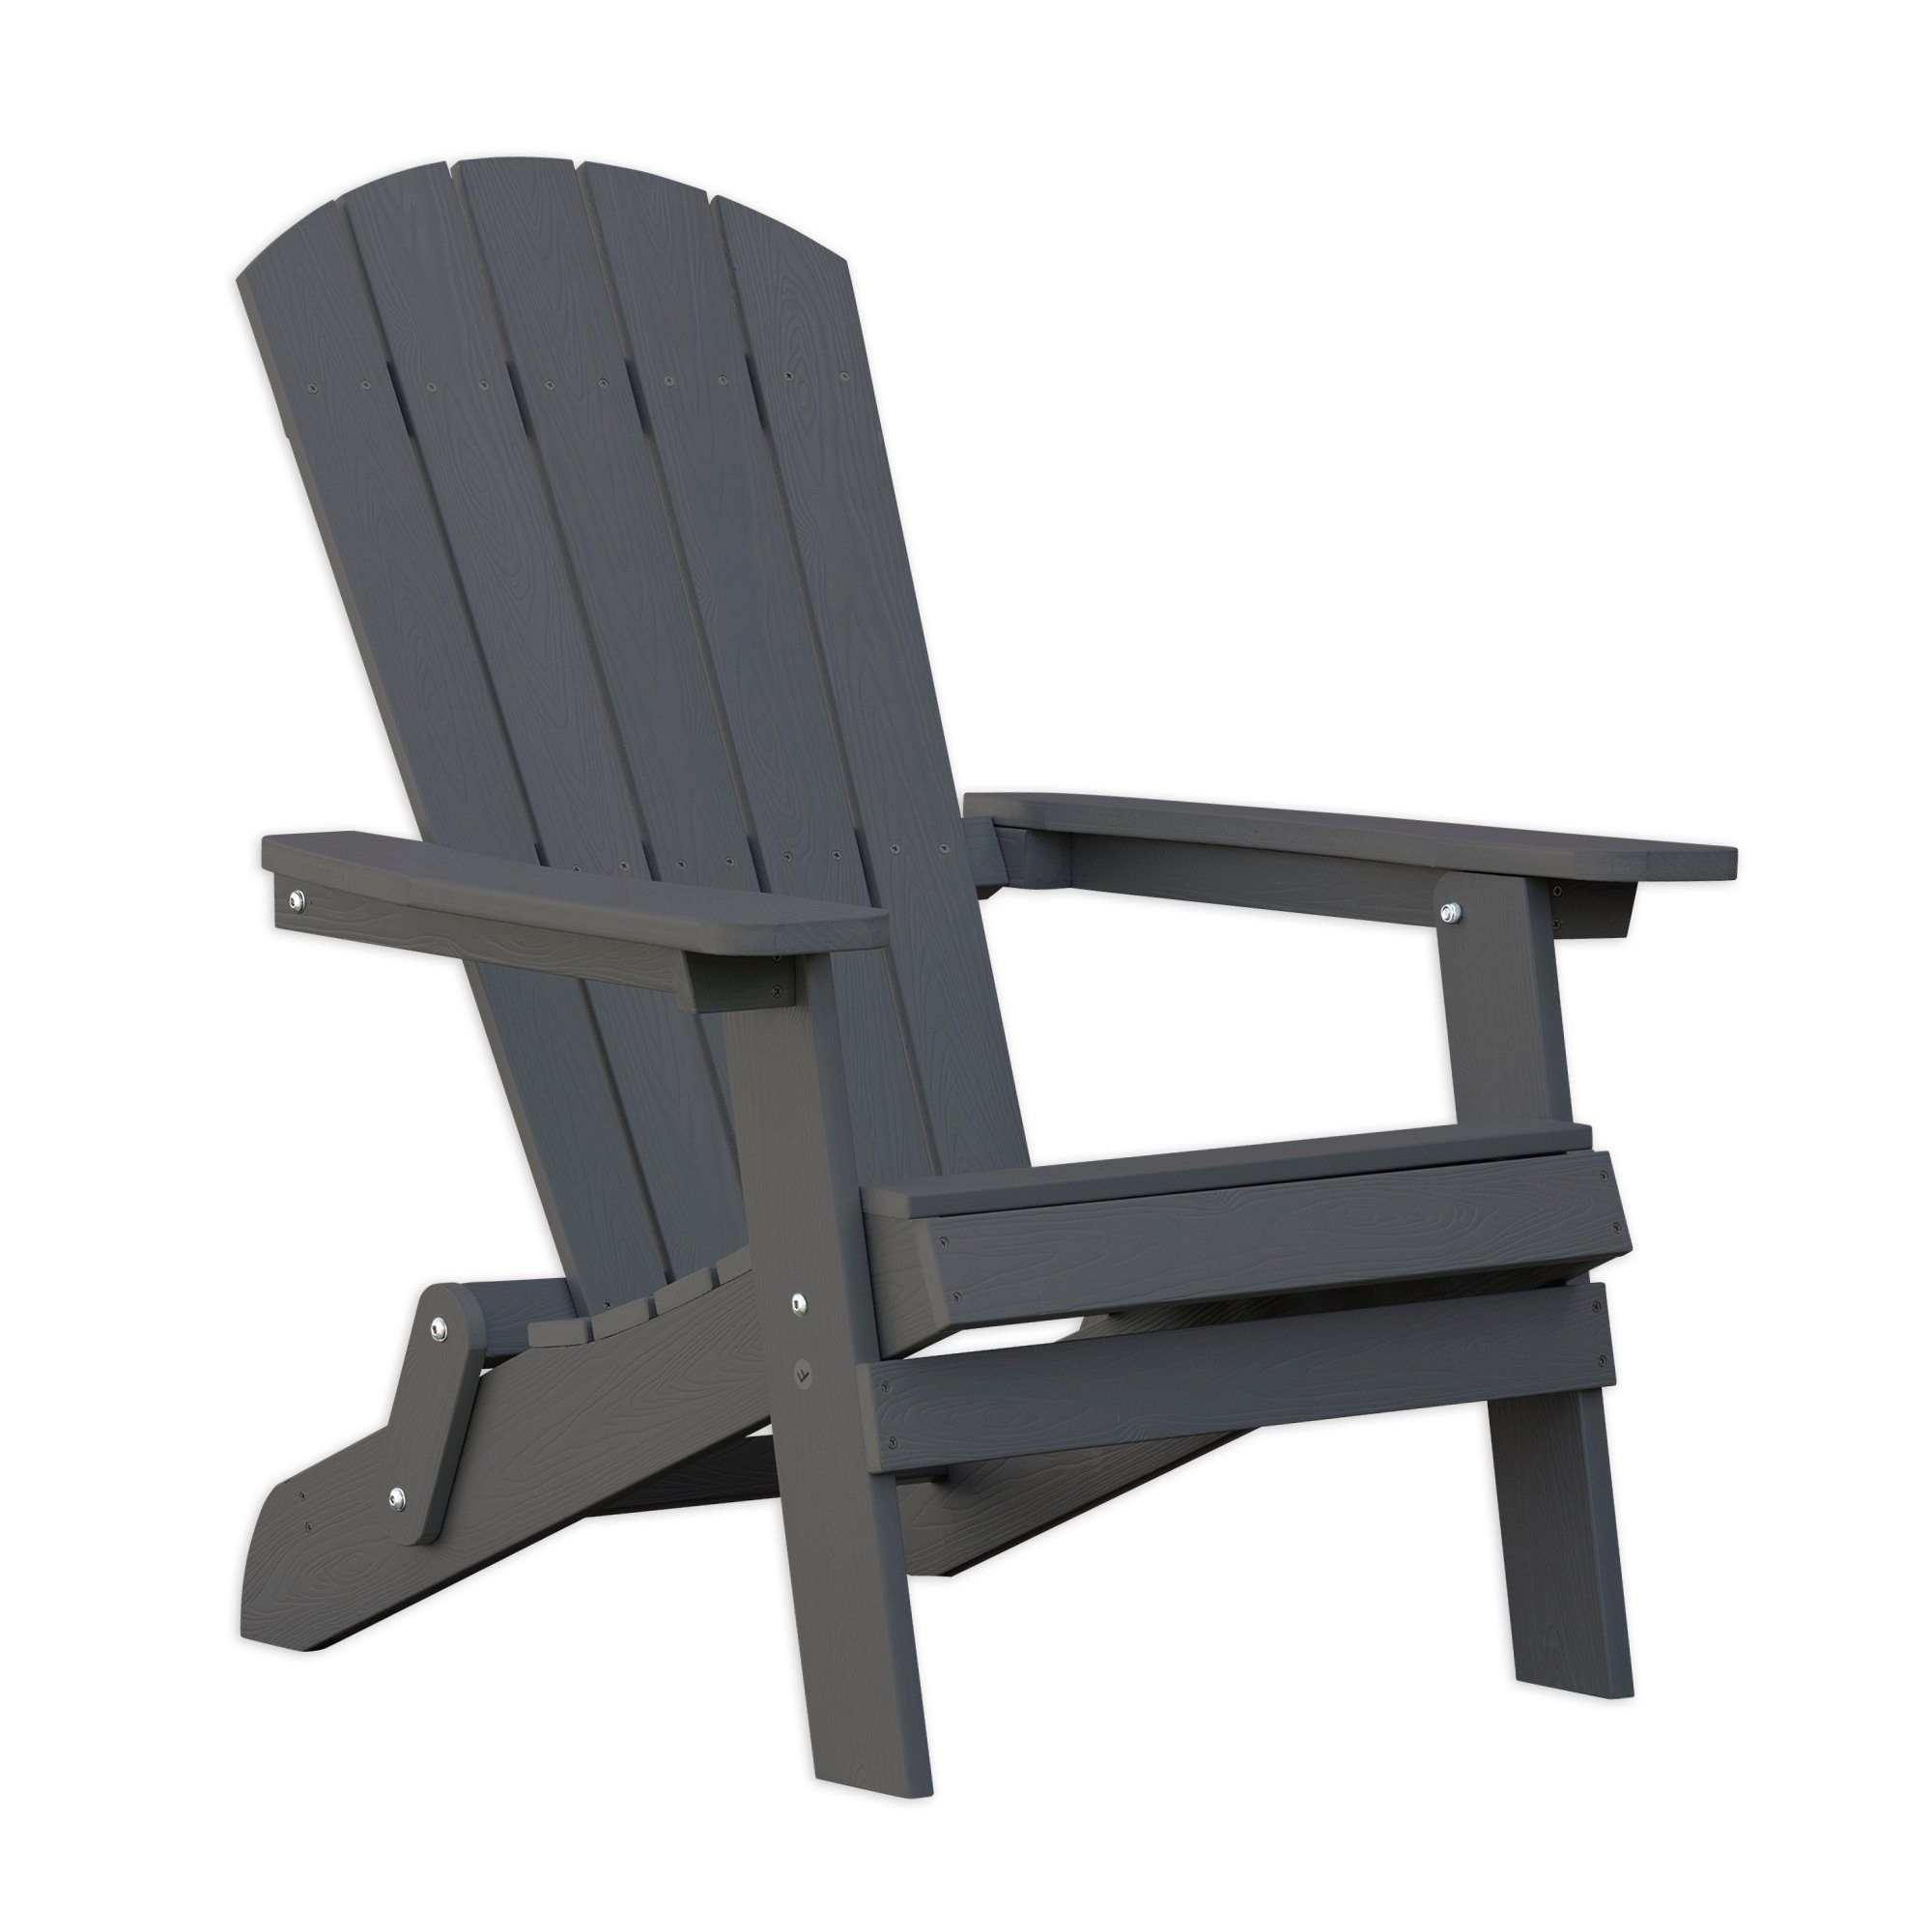 Endorphin Stuhl ® Adirondack Gartenstuhl/Sessel klappbar aus WPC Verbundstoff (kein Set)